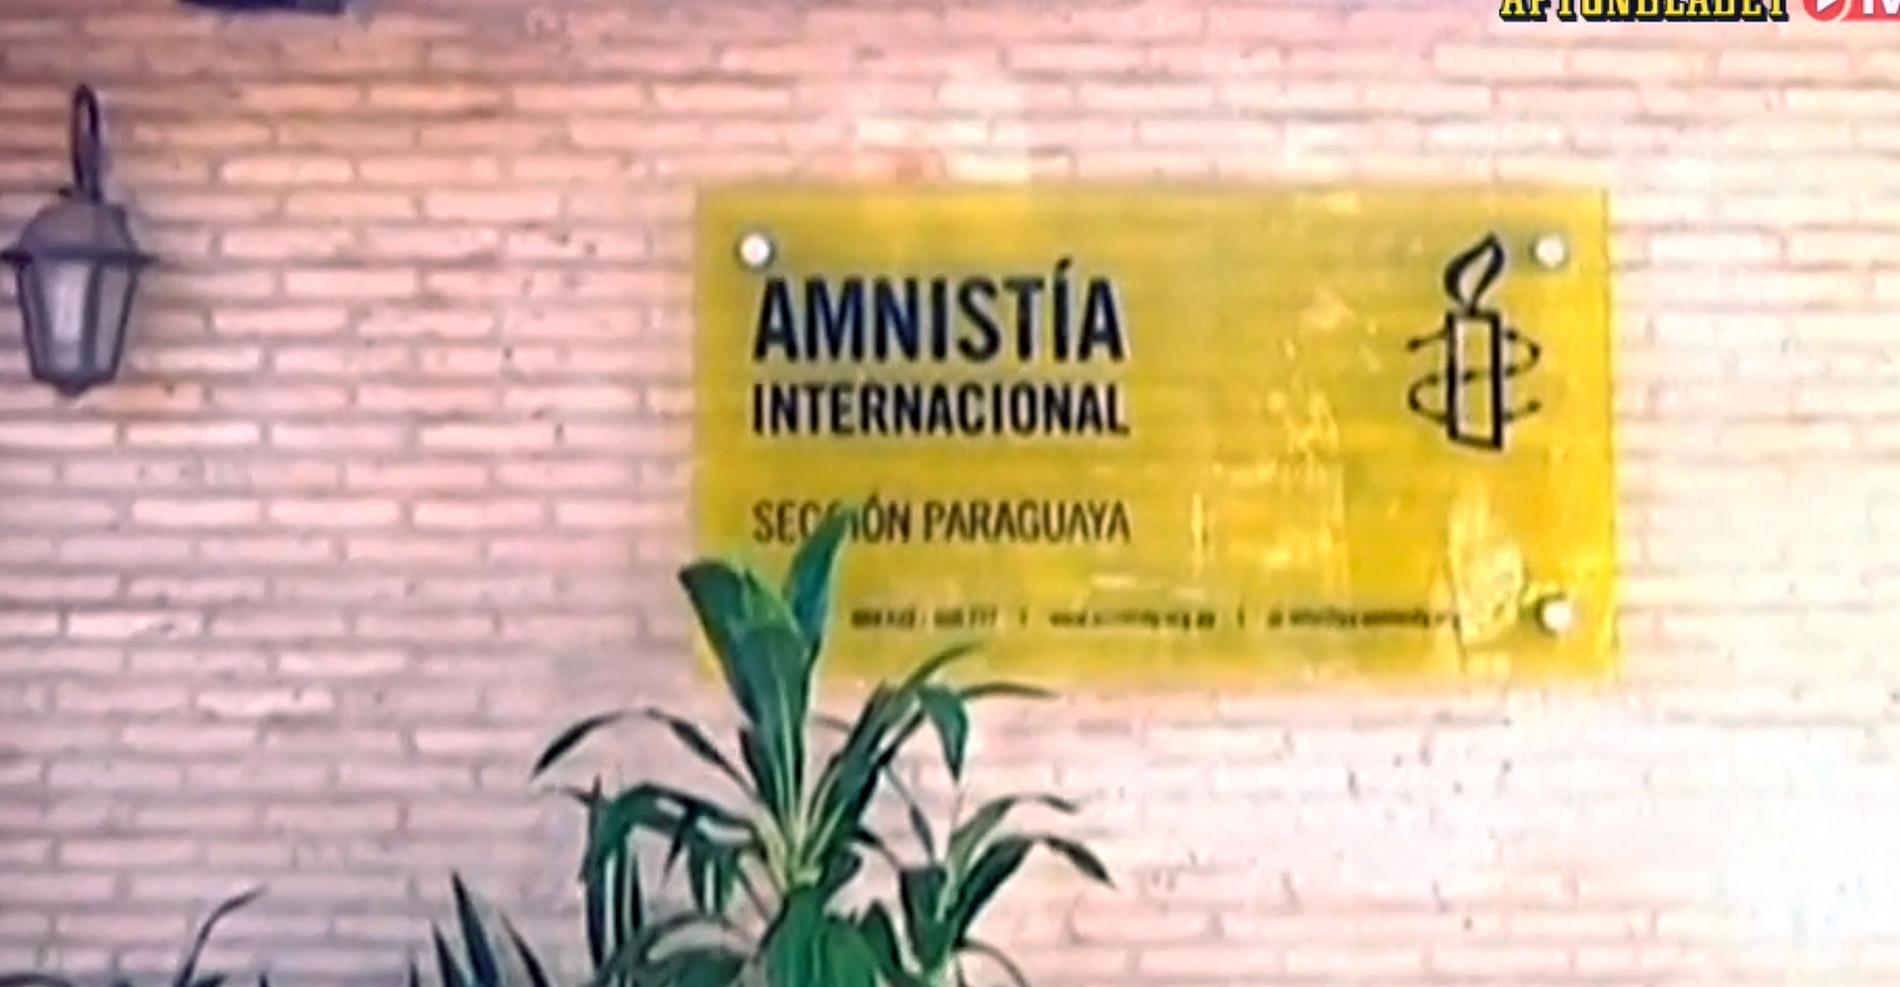 Amnesty är en av de organisationer som engagerat sig i fallet. De riktar hård kritik mot Paraguay.